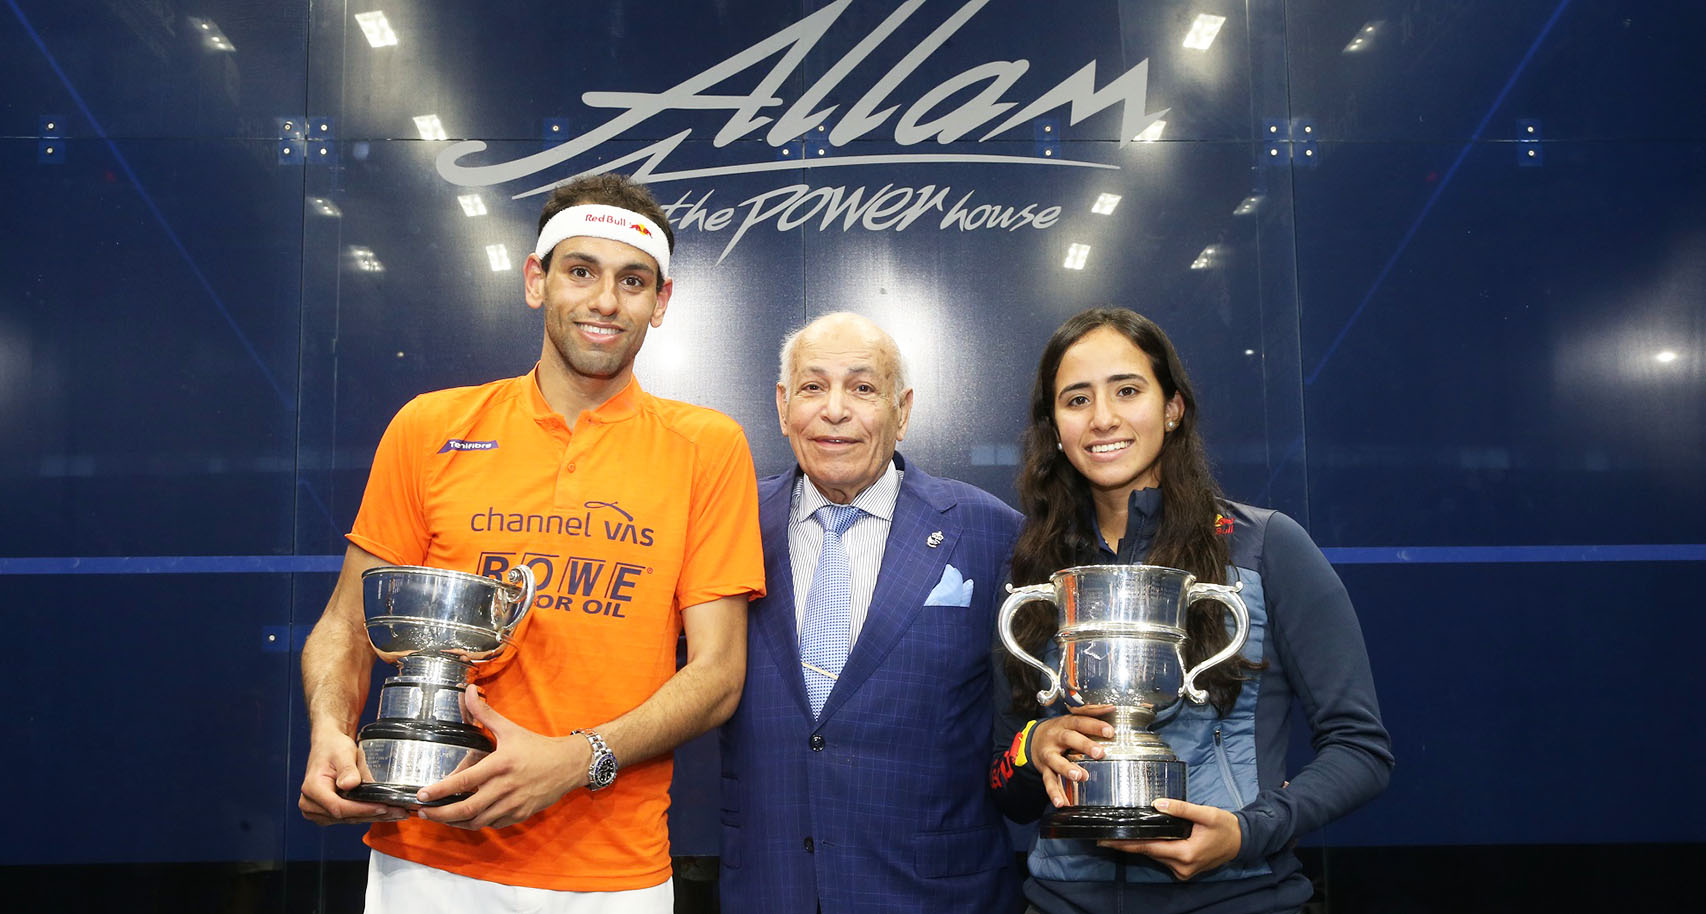 Mohamed ElShorbagy, Dr Allam and Nouran Gohar at the Allam British Open 2019